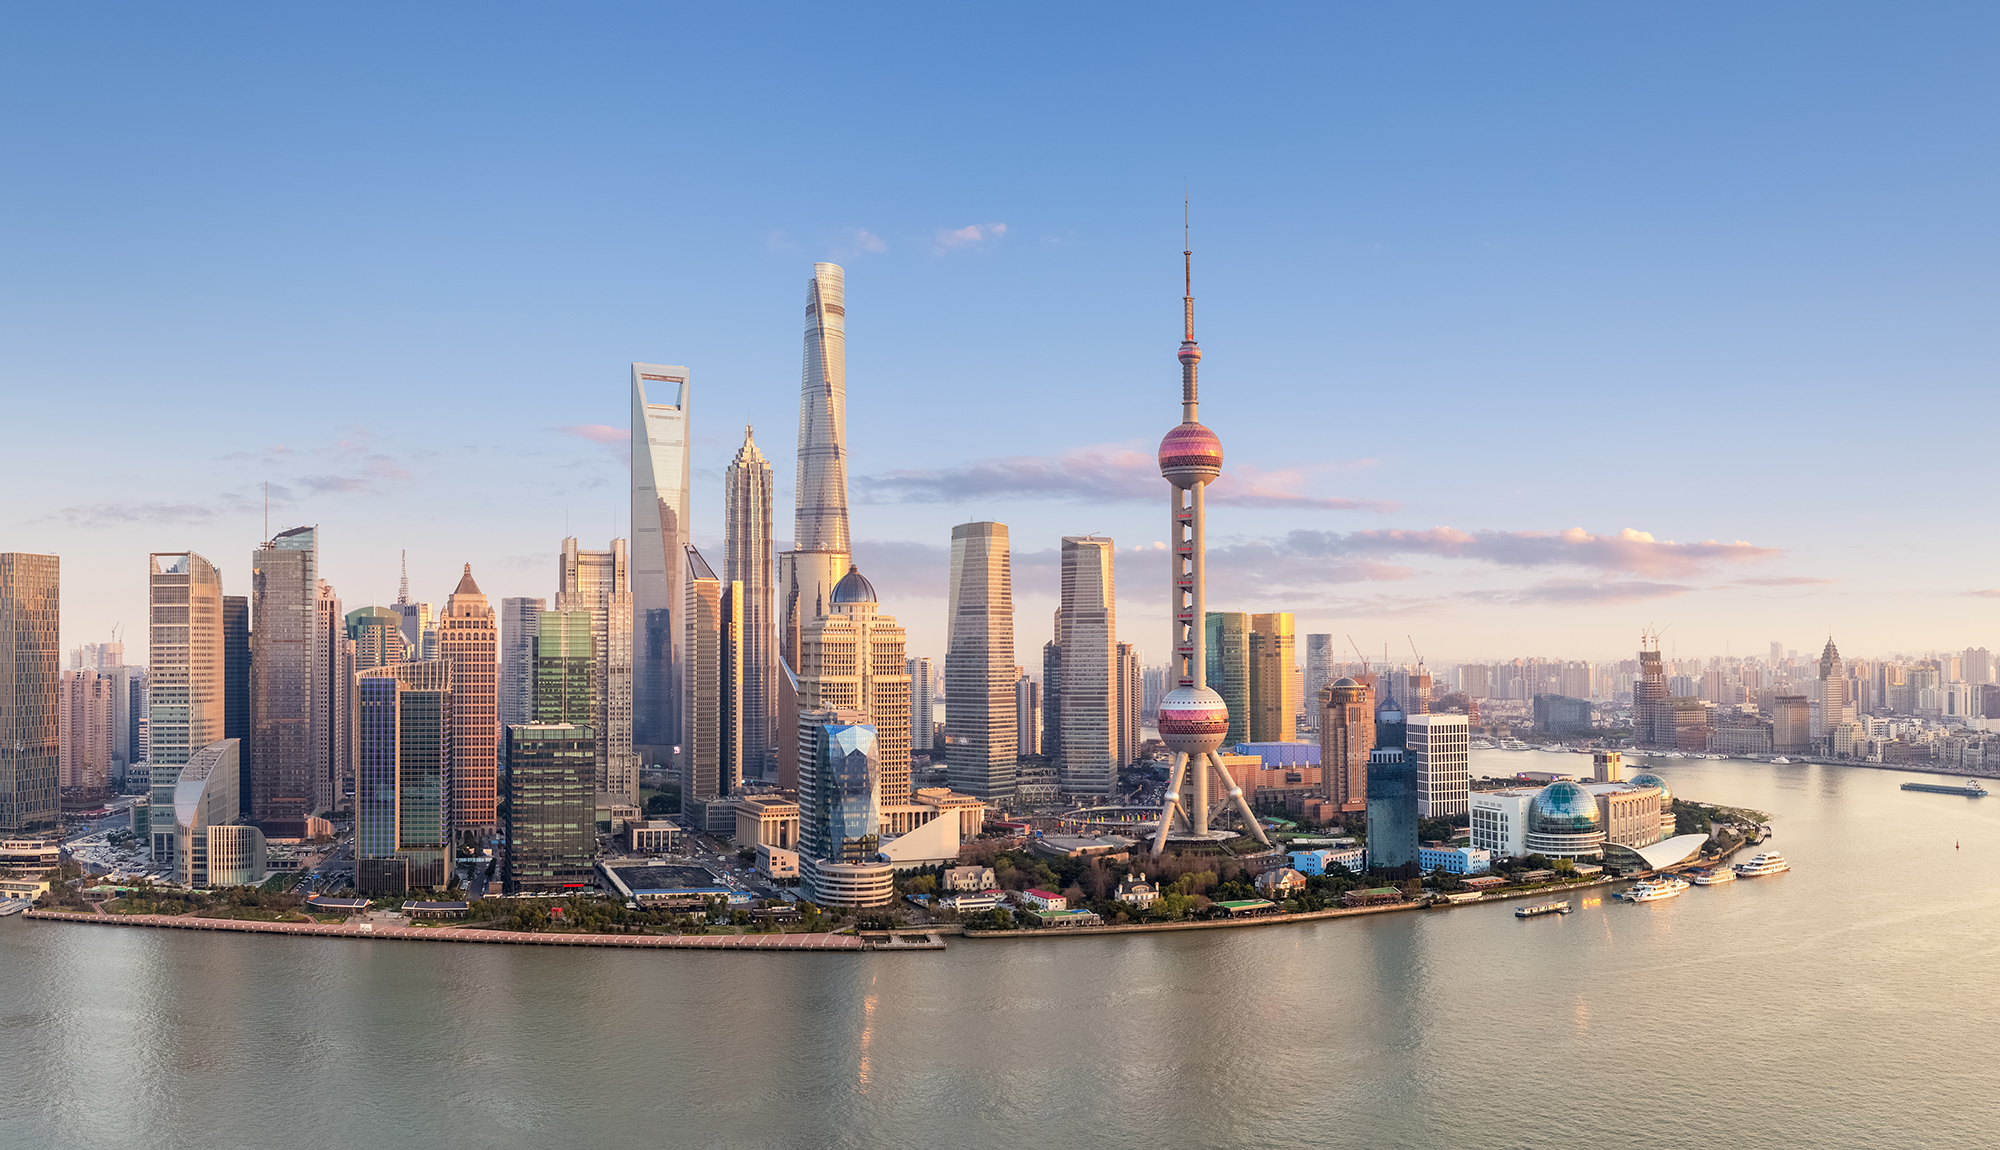 Das Stadtbild Shanghais wird von der modernen Skyline und historischen Uferpromenade am Bund dominiert